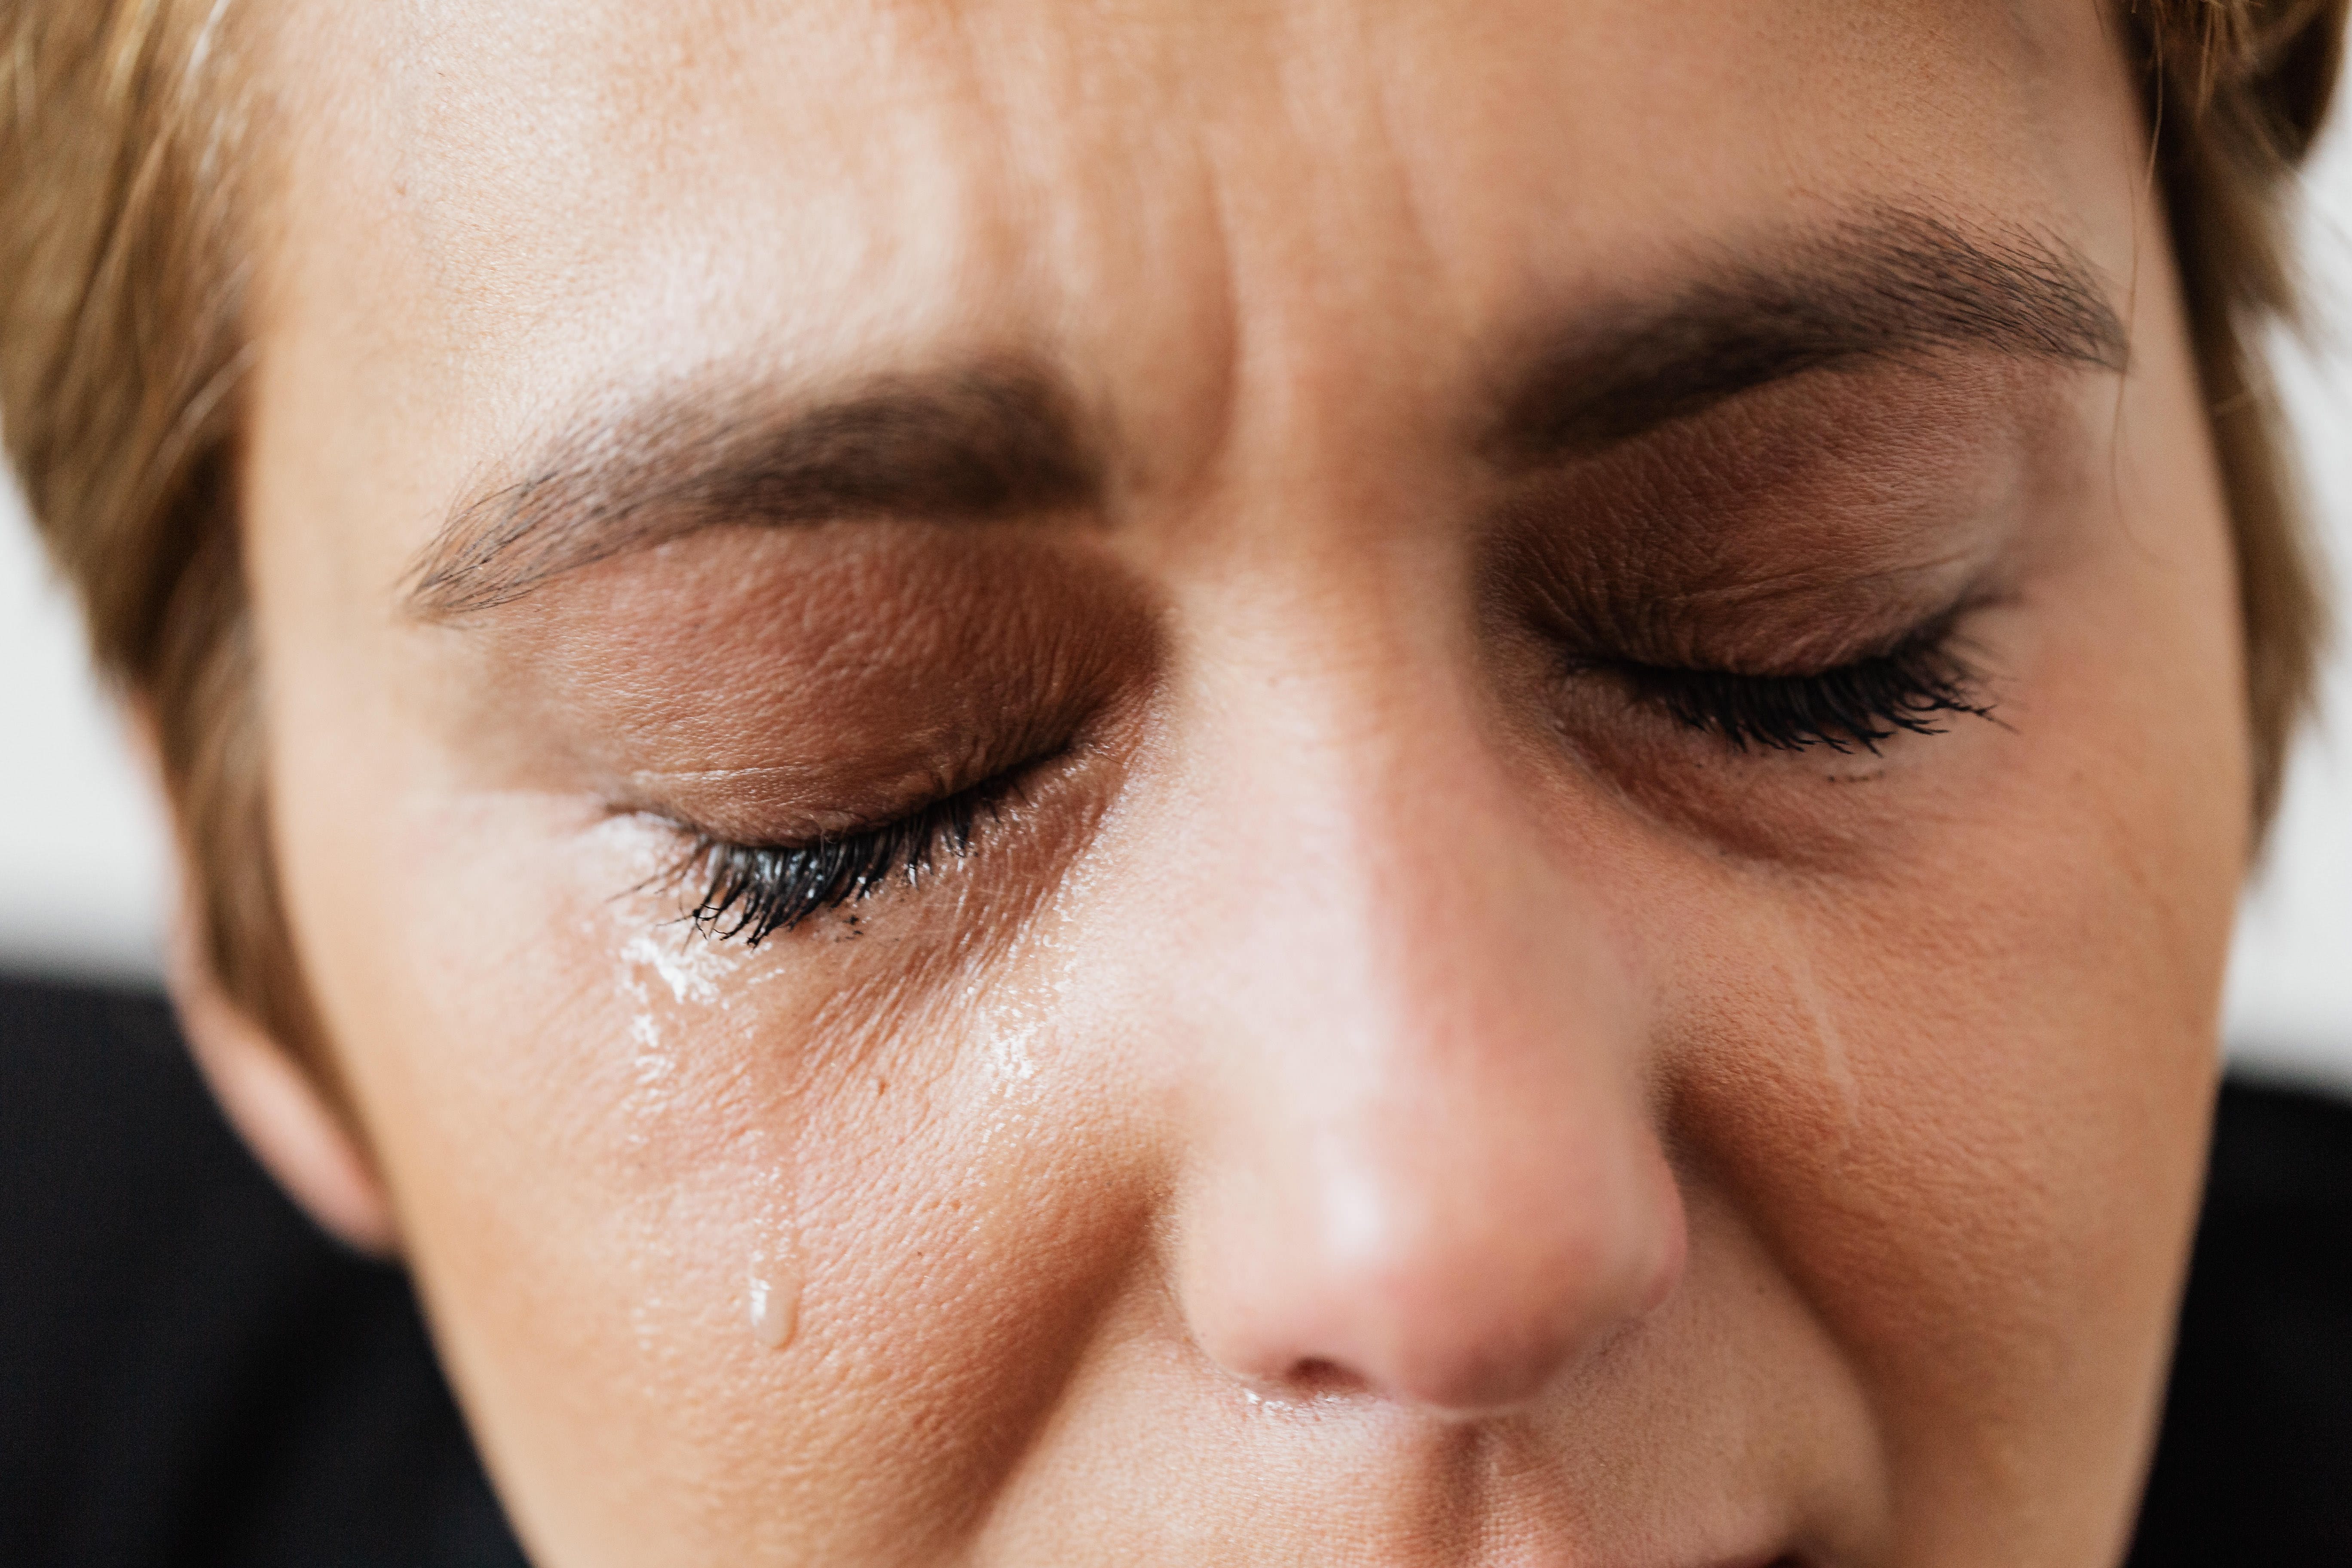 Une femme a des larmes qui coulent sur son visage, les yeux fermés | Source : Pexels